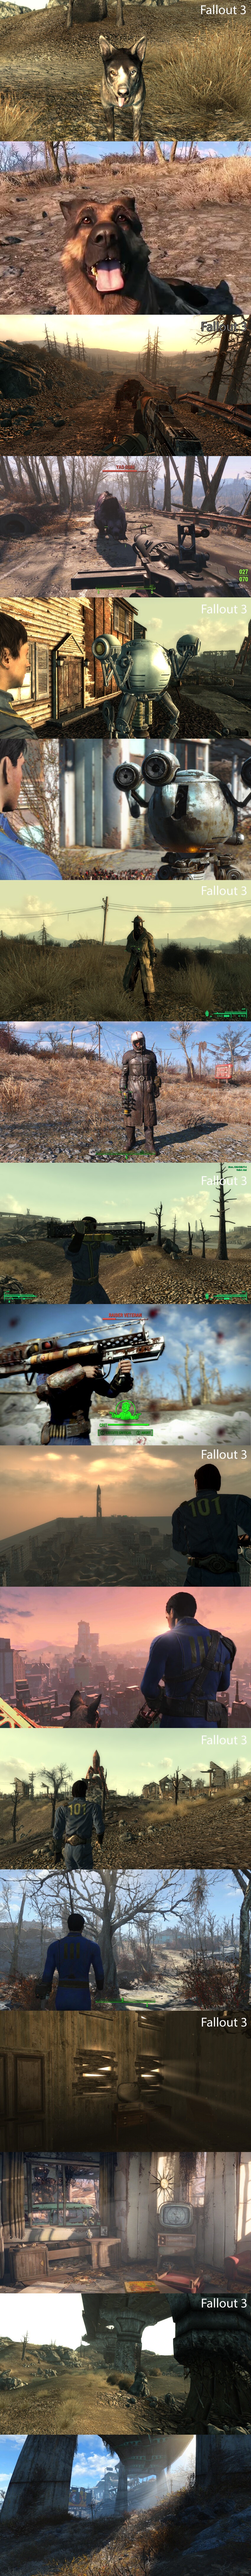 Fallout 4 vs Fallout 3 сравнение графики  